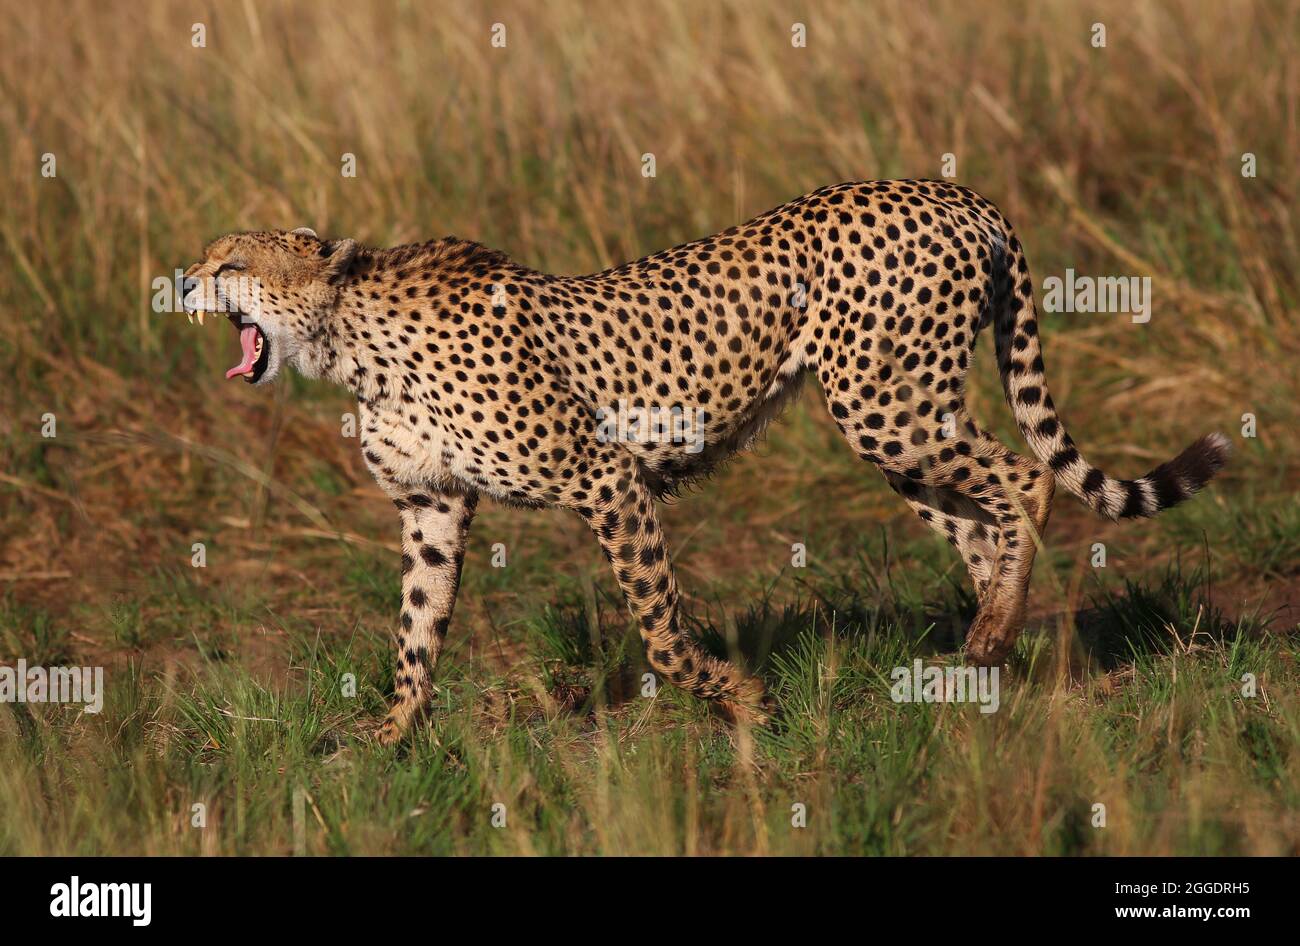 Bedroht, Gefährlich, Geparde sind schöne Raubkatzen oder Großkatzen und die schnellsten Landtiere der Welt. Afrique, Serengeti, Tansania, Kenia, Banque D'Images